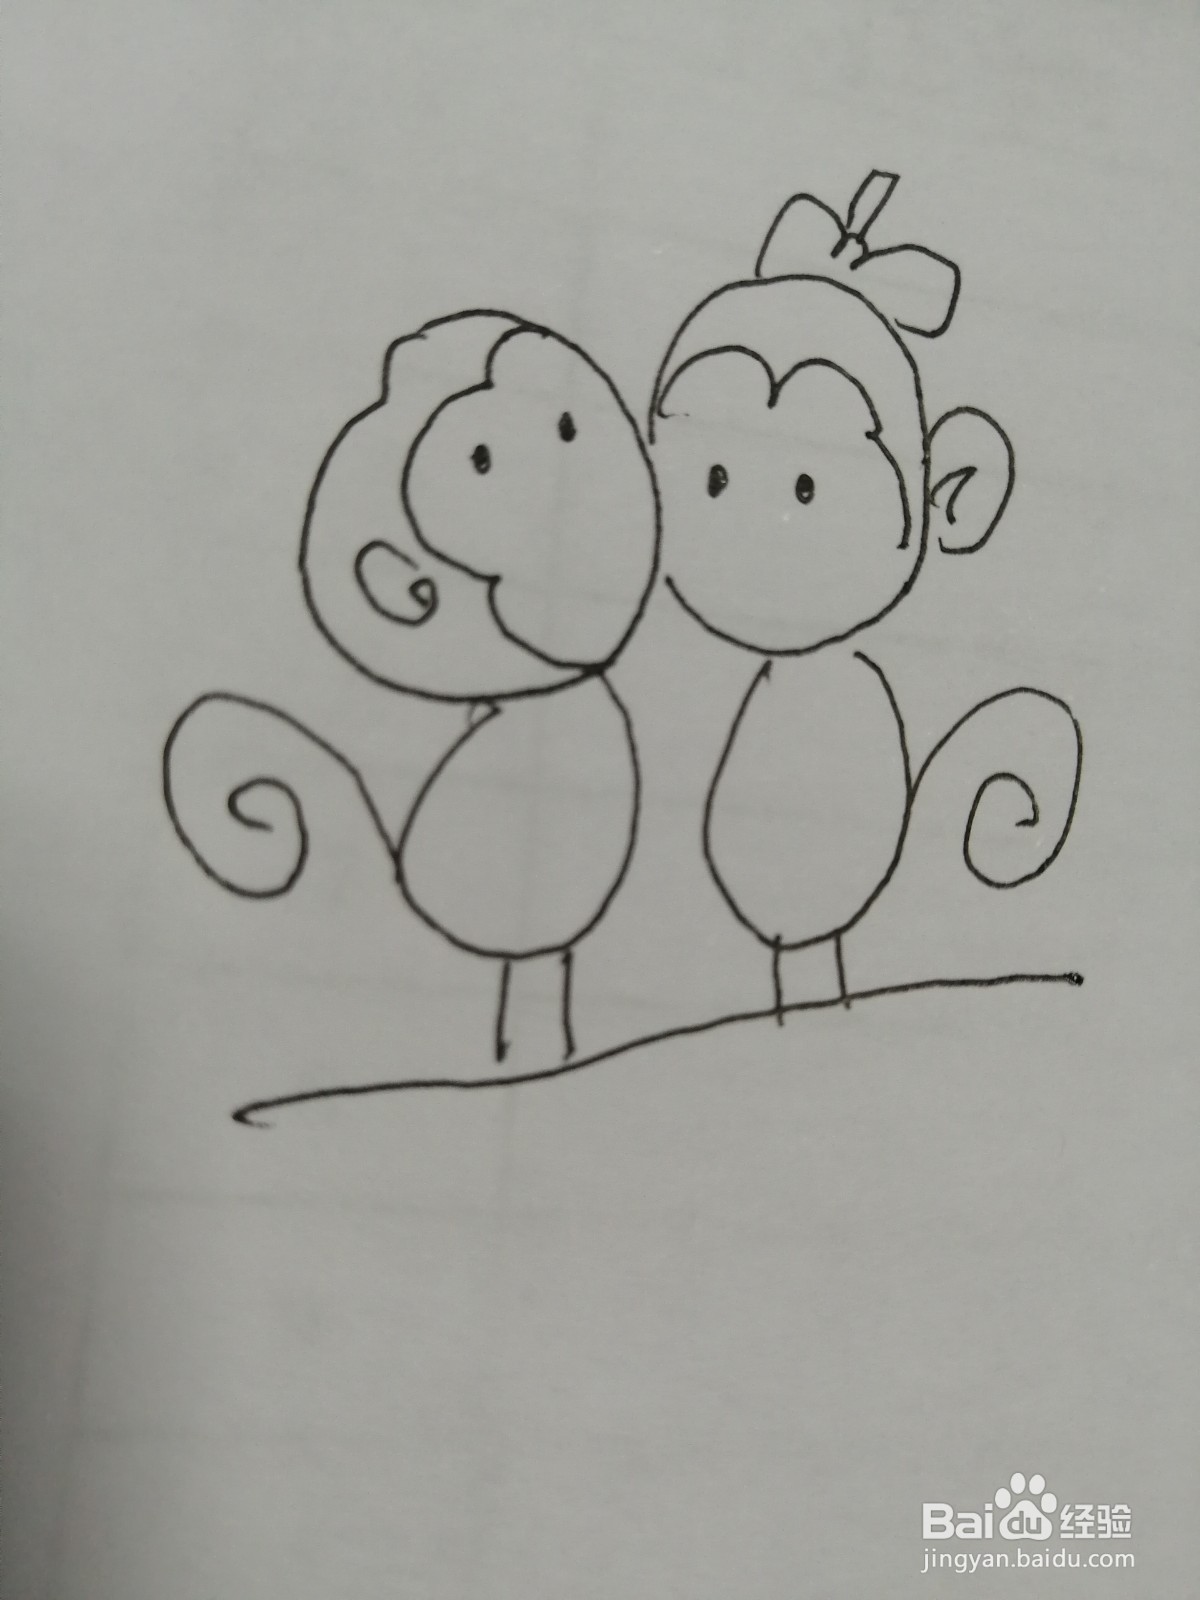 <b>情侣小猴子怎么画</b>